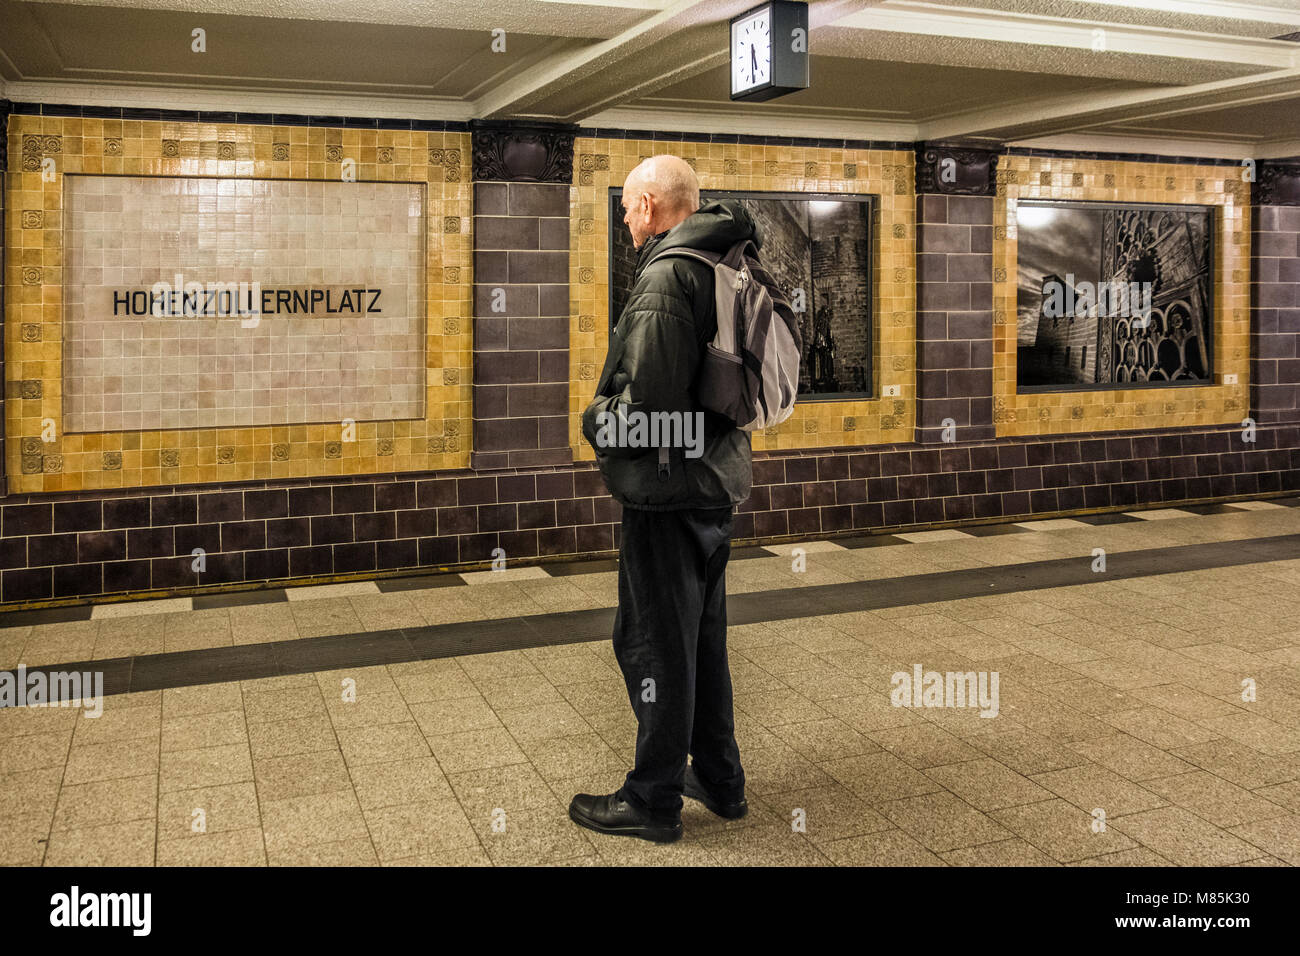 Berlin Wilmersdorf district,Hohenhollernplatz U3 U-Bahn underground railway station interior. Senior elderly man waiting on platform Stock Photo